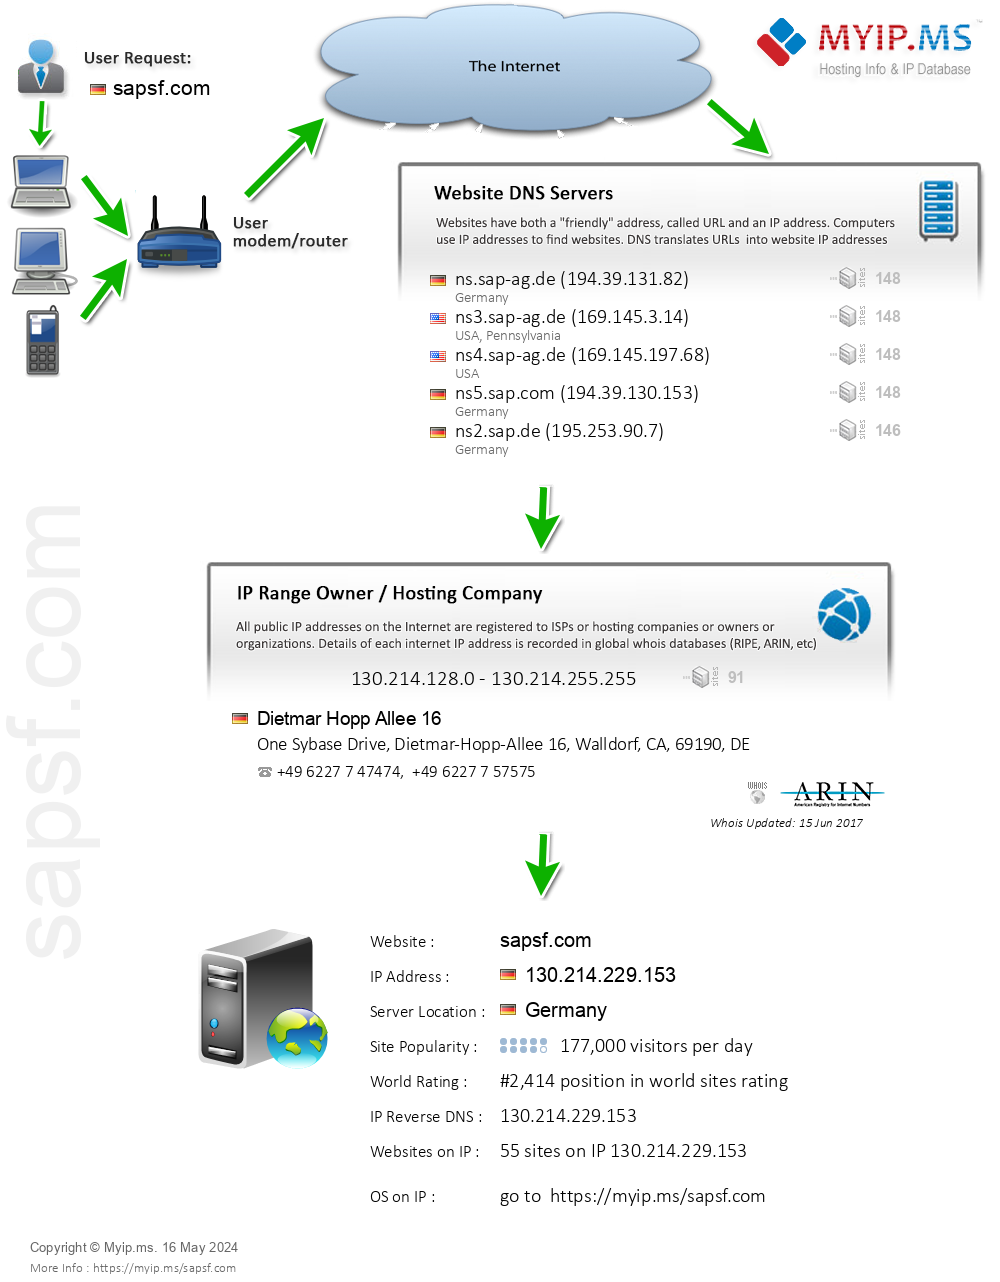 Sapsf.com - Website Hosting Visual IP Diagram